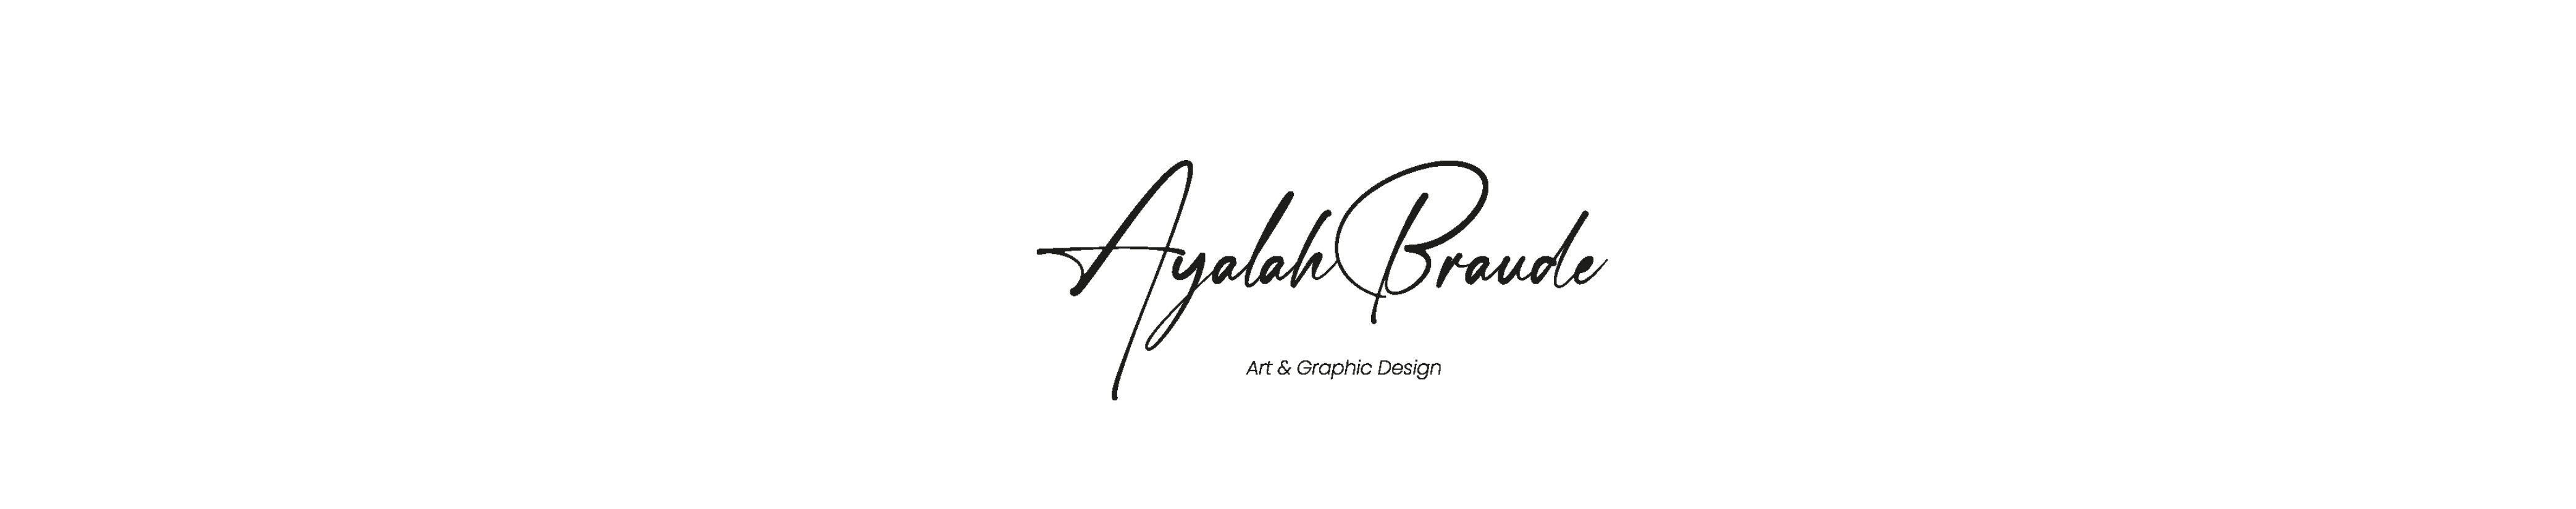 Ayalah Braude's profile banner